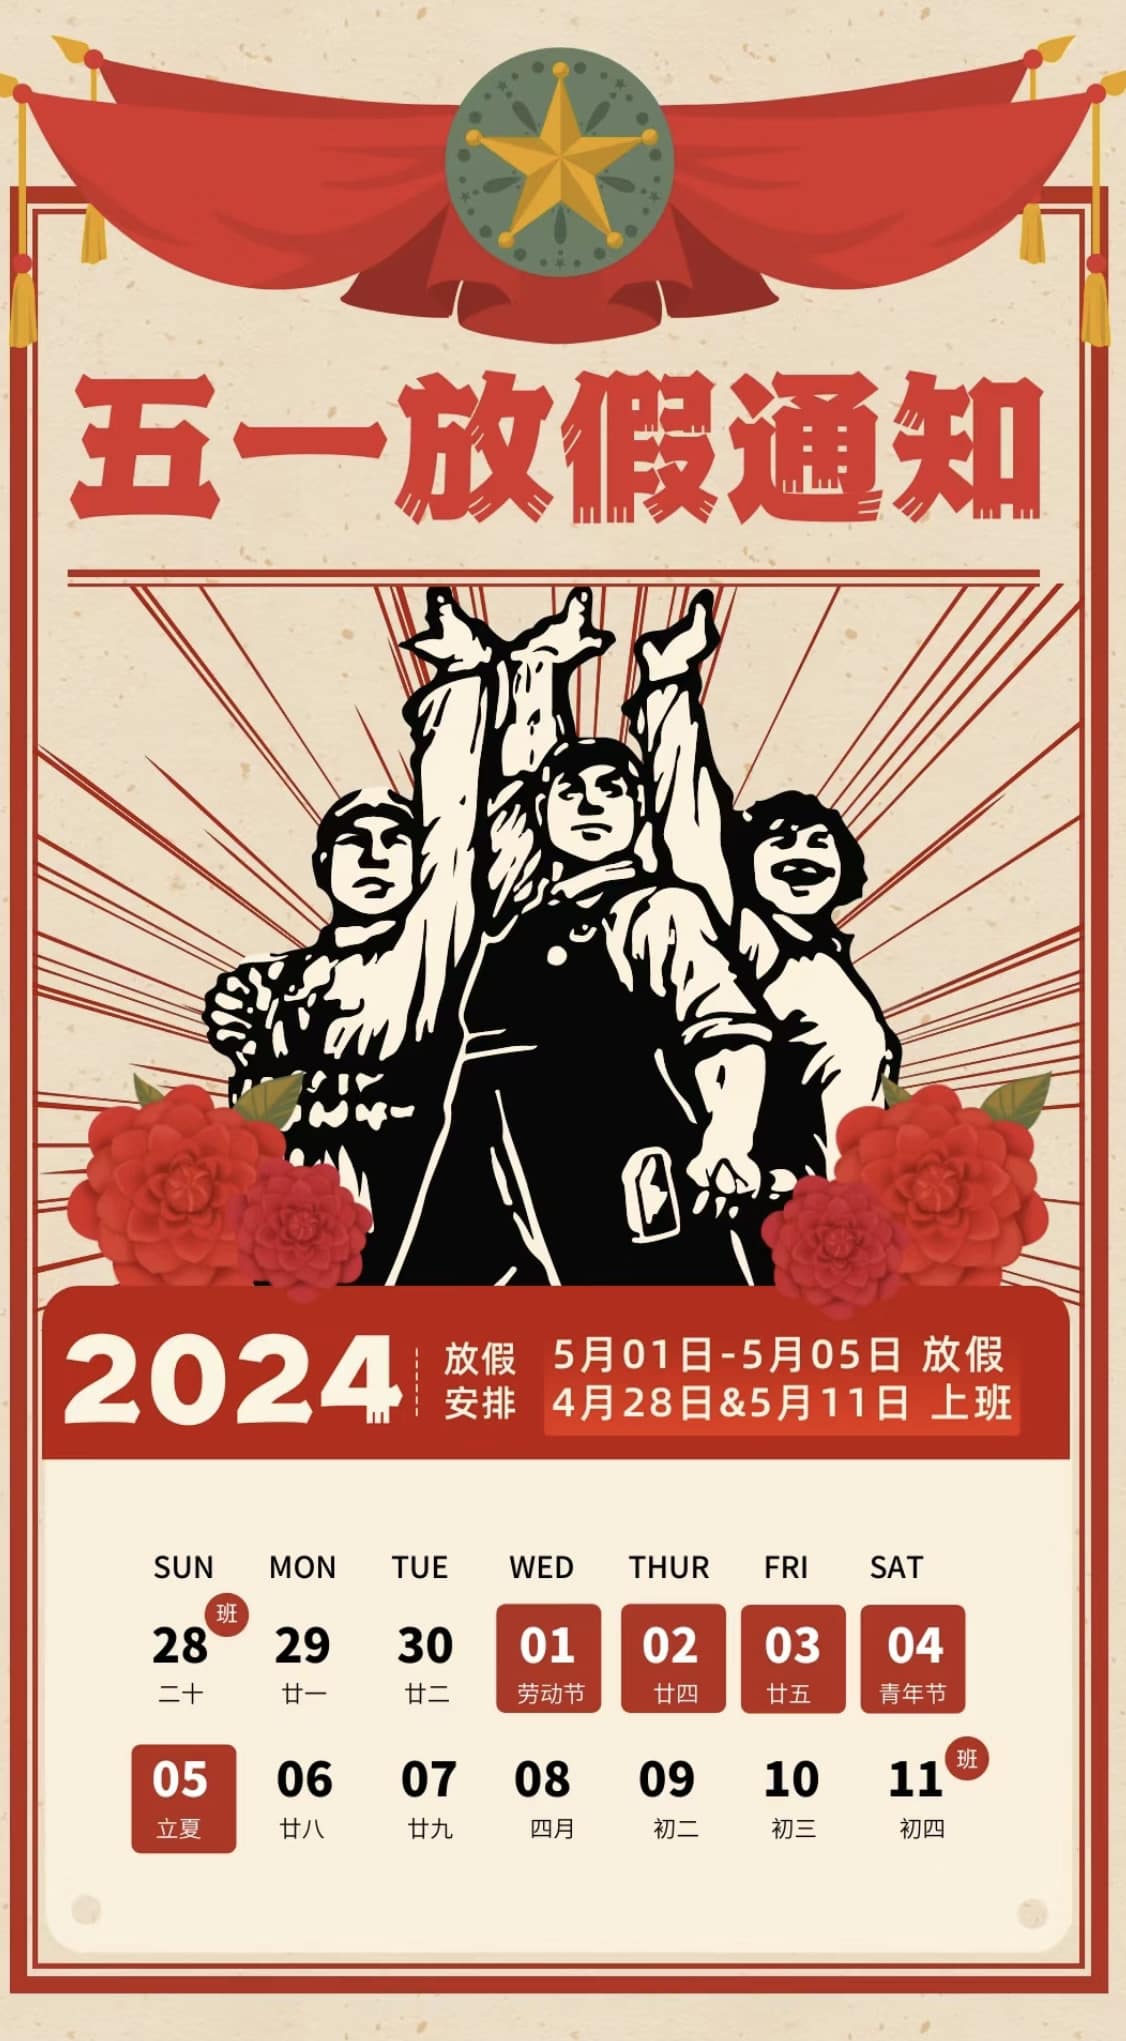 يرجى ملاحظة أننا نقترب من يوم العمال العالمي لعام 2024!